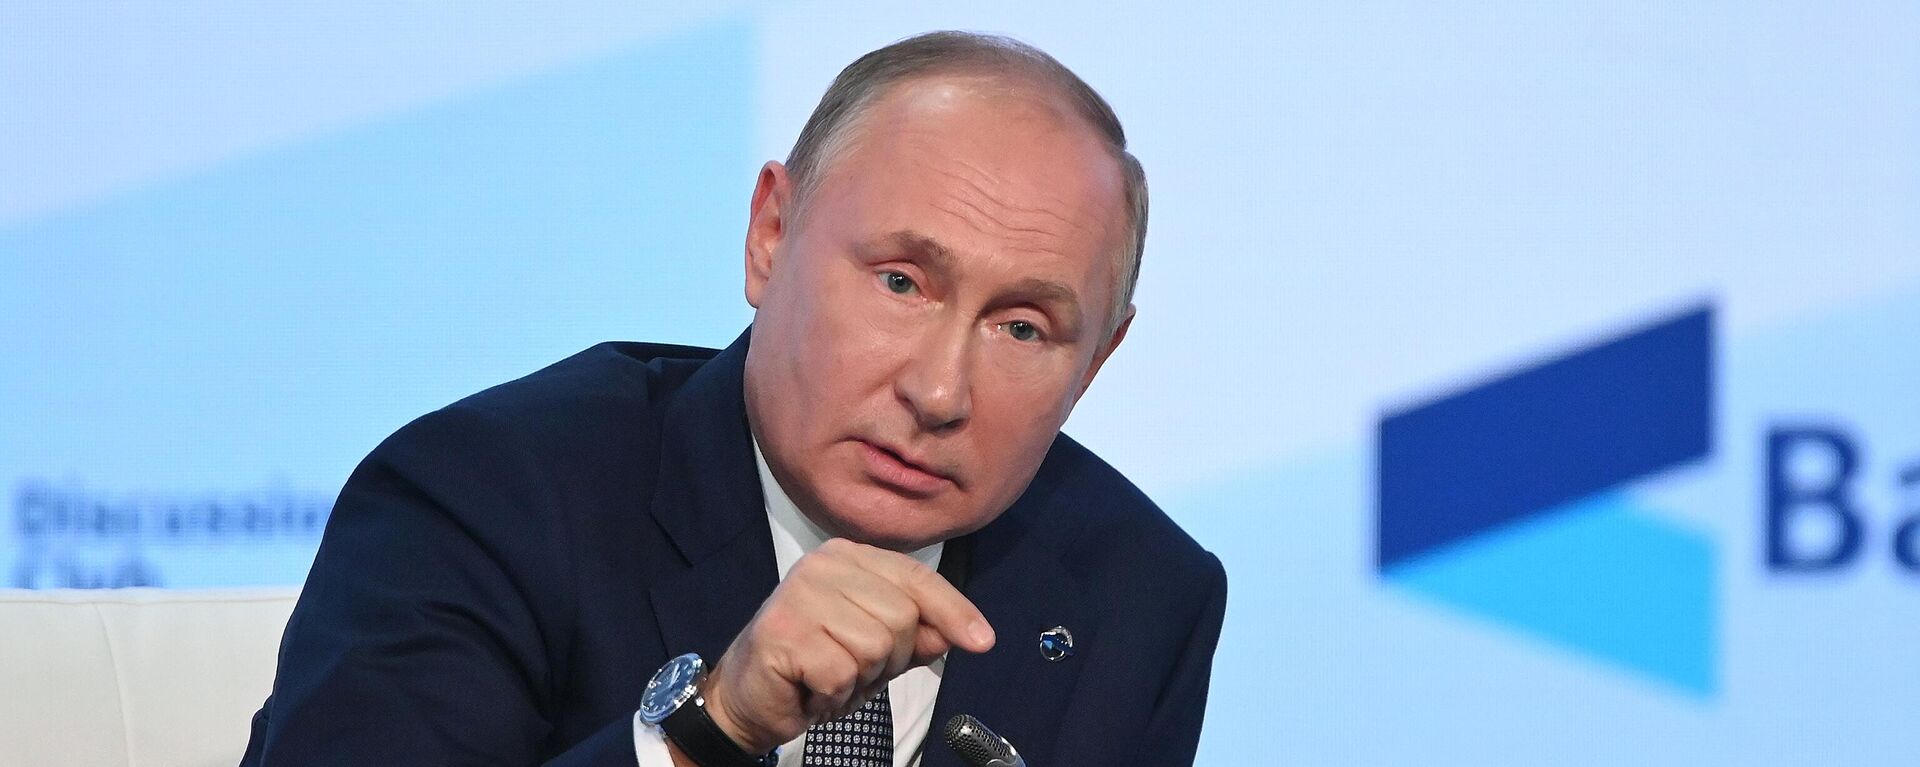 Vladímir Putin, presidente de Rusia, durante su intervención en el Club Internacional Valdái en Sochi (Rusia), el 21 de octubre del 2021 - Sputnik Mundo, 1920, 21.10.2021